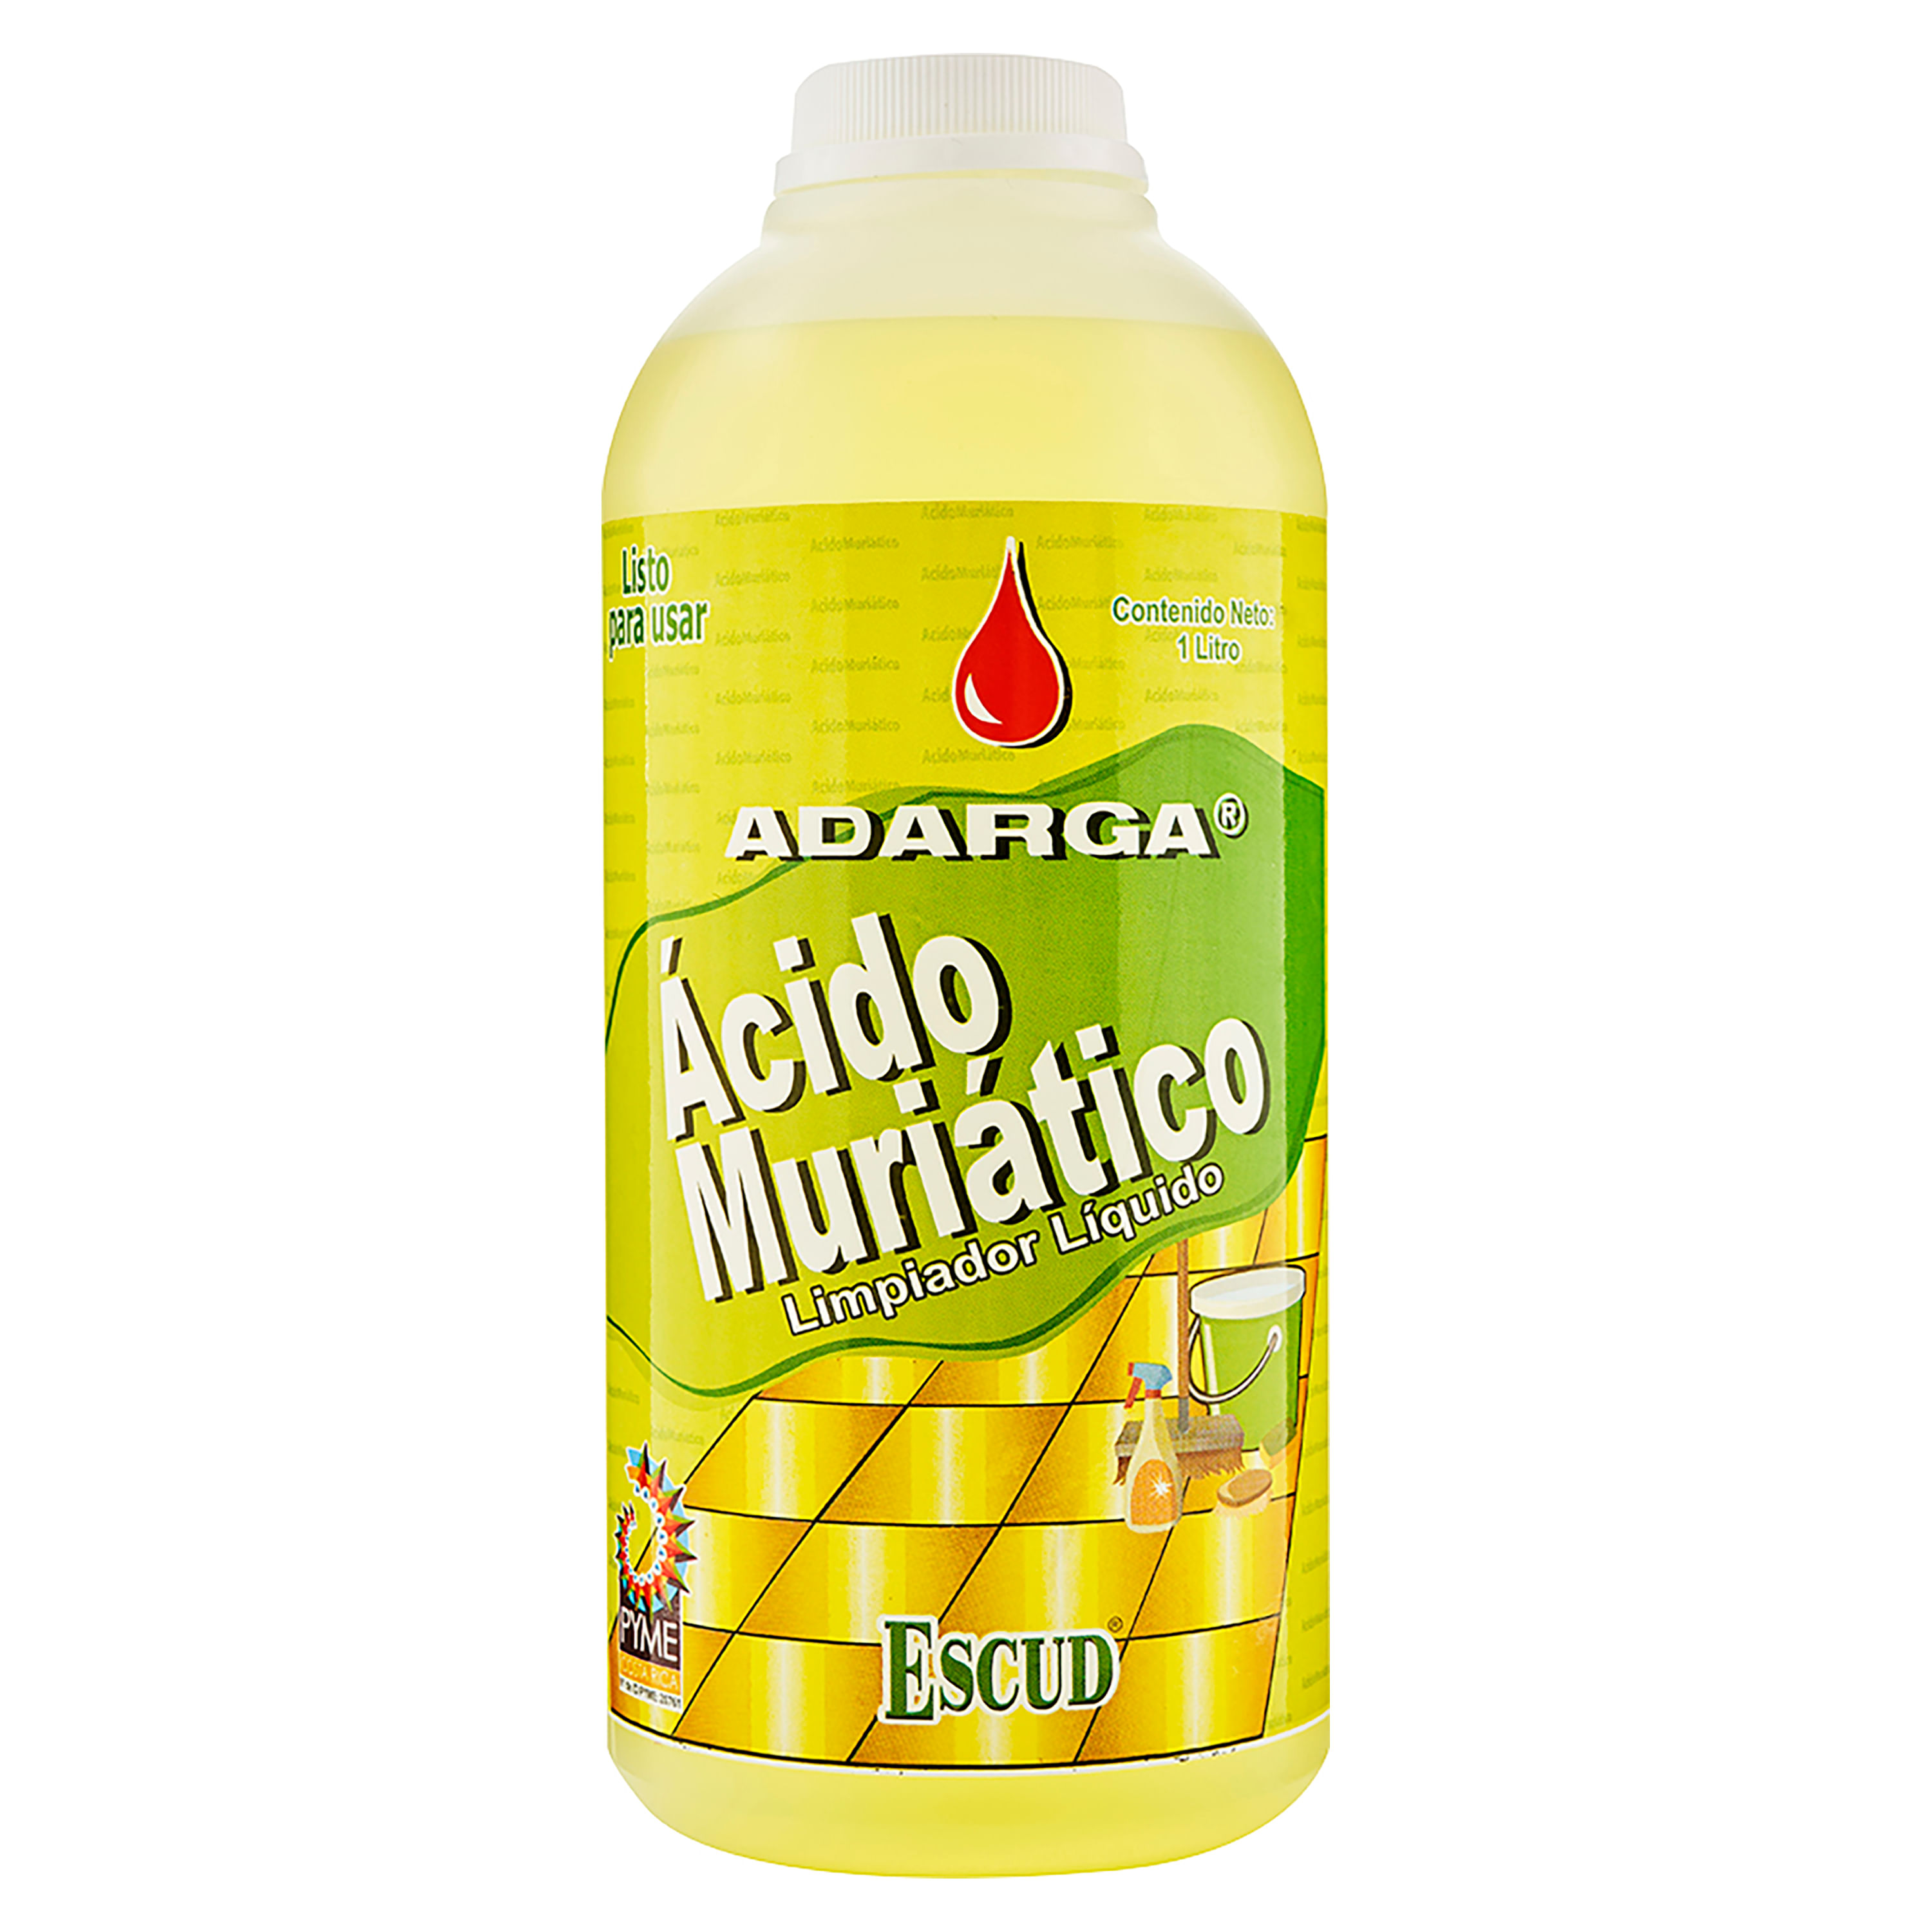 Acido-Adarga-Muriatico-Escud-Limpiador-Listo-para-Usar-1000ml-1-36029